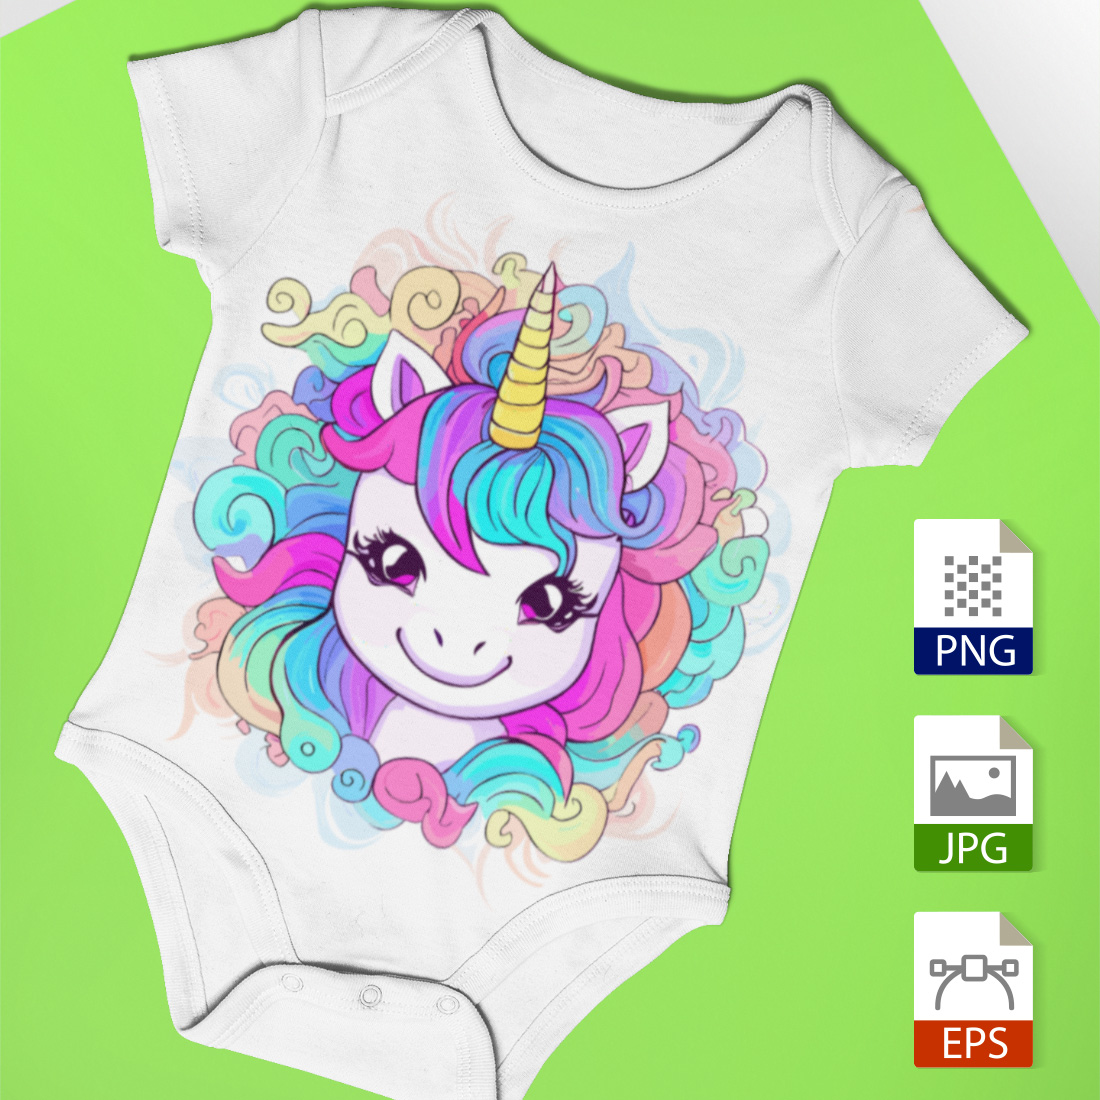 Playful Baby Unicorn Magic cover image.